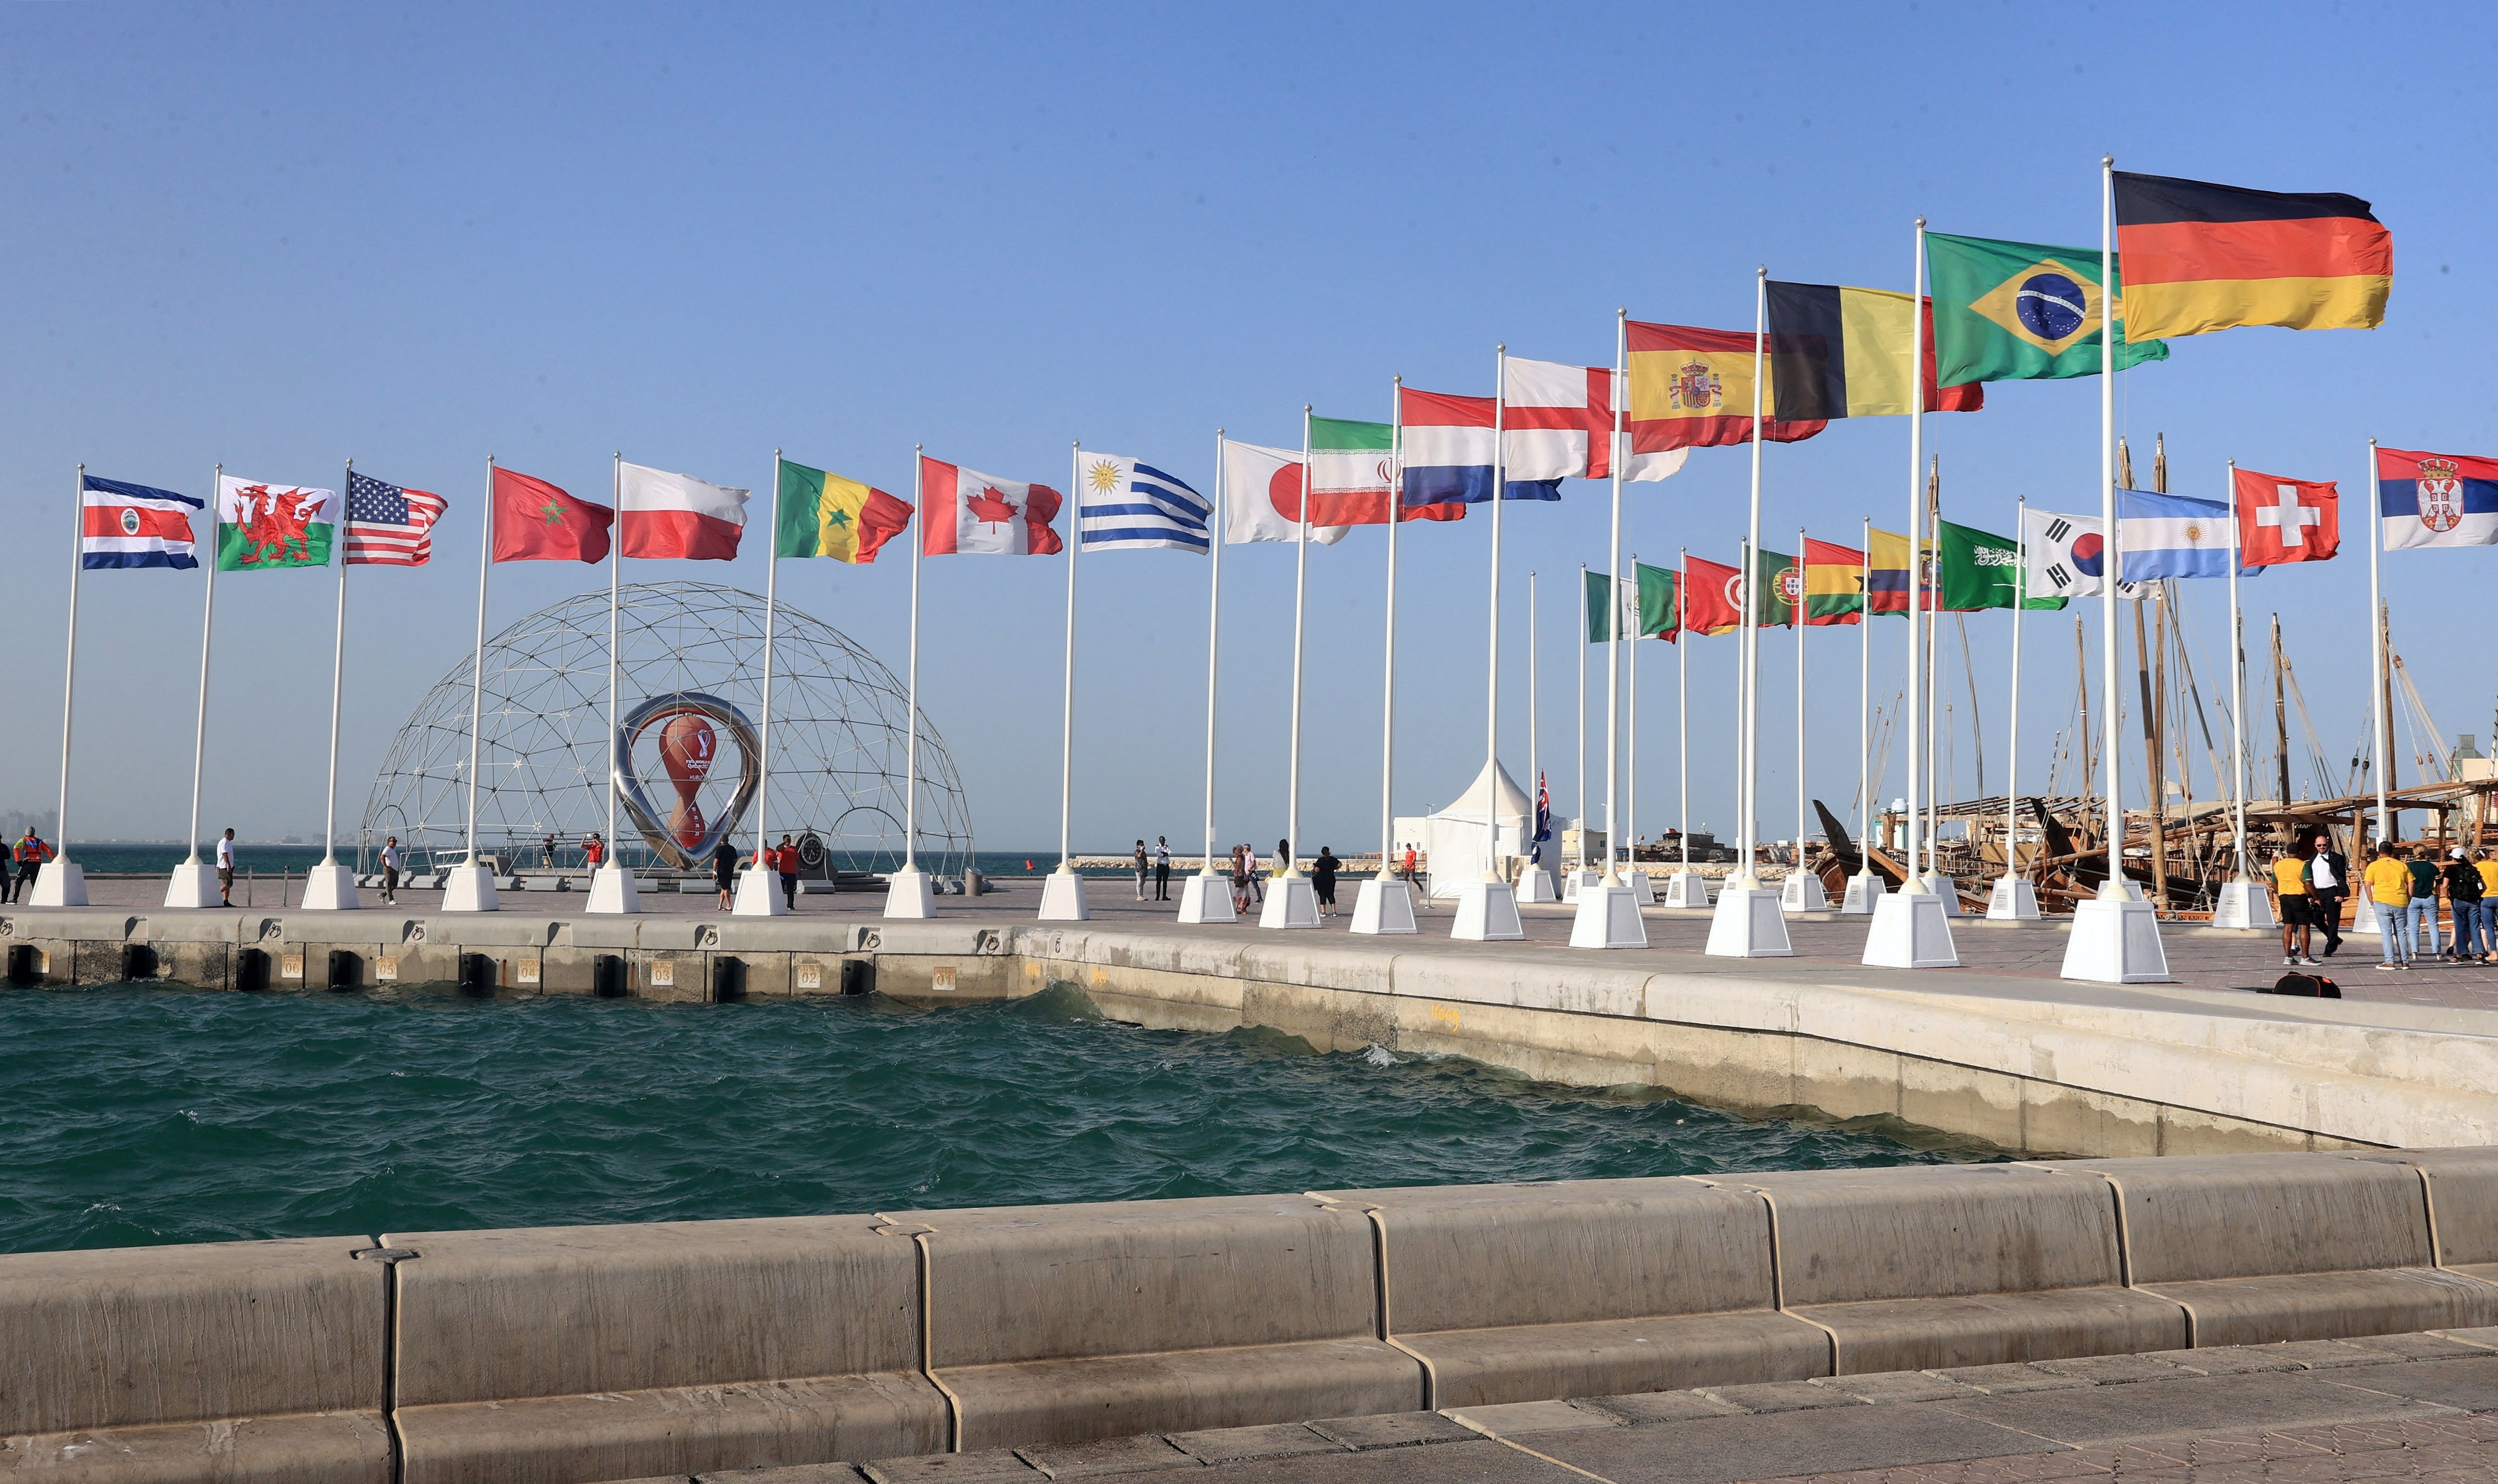 Quedan 5 días para el inicio de la Copa Mundial de la FIFA de Qatar 2022 (Foto: REUTERS)